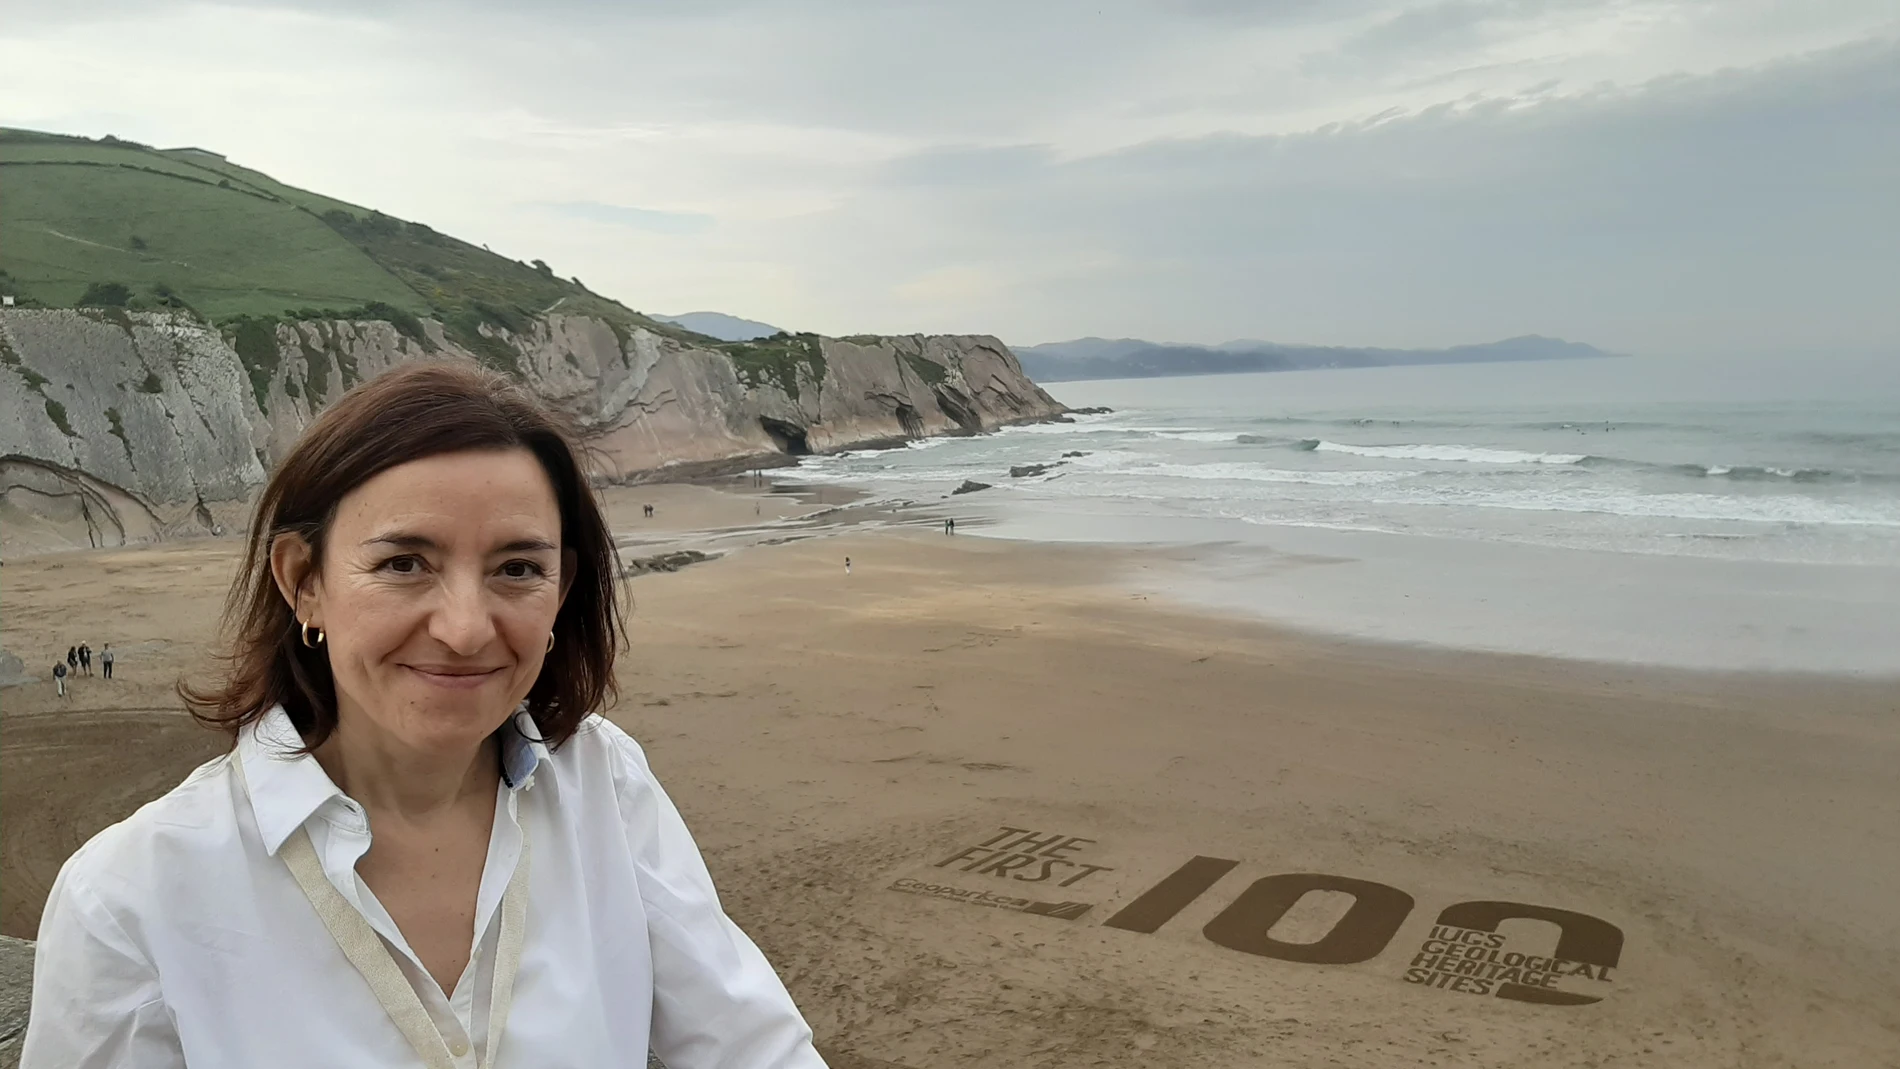 Una mujer con camisa blanca sonriendo delante de una playa donde se ve el número 100 pintado en la arena